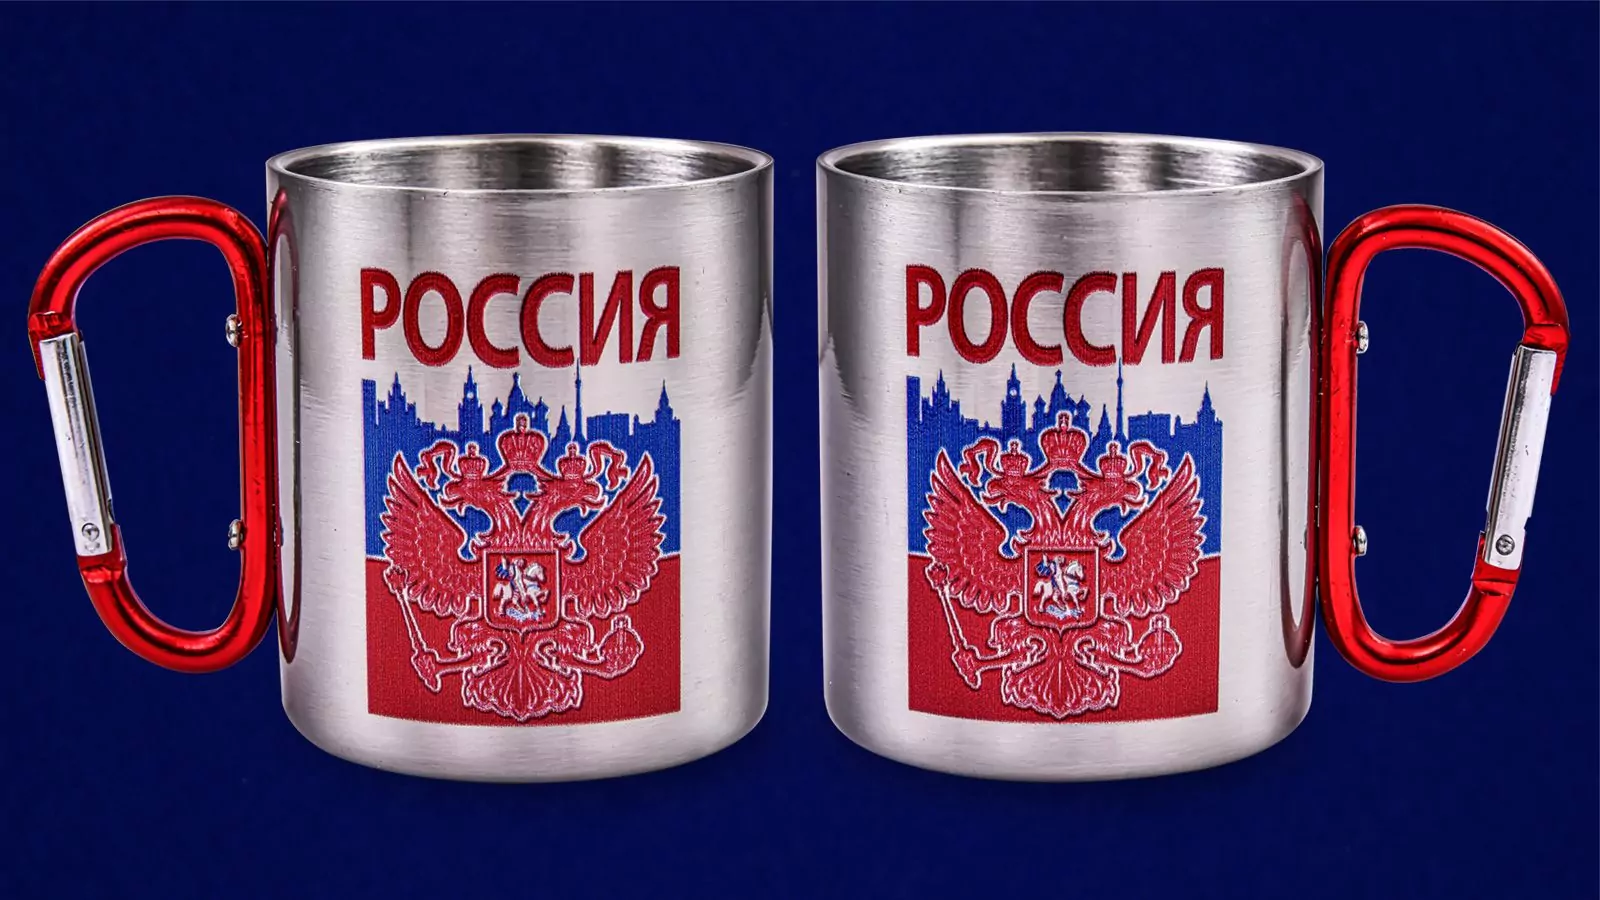 Походная кружка из нержавейки с гербом России